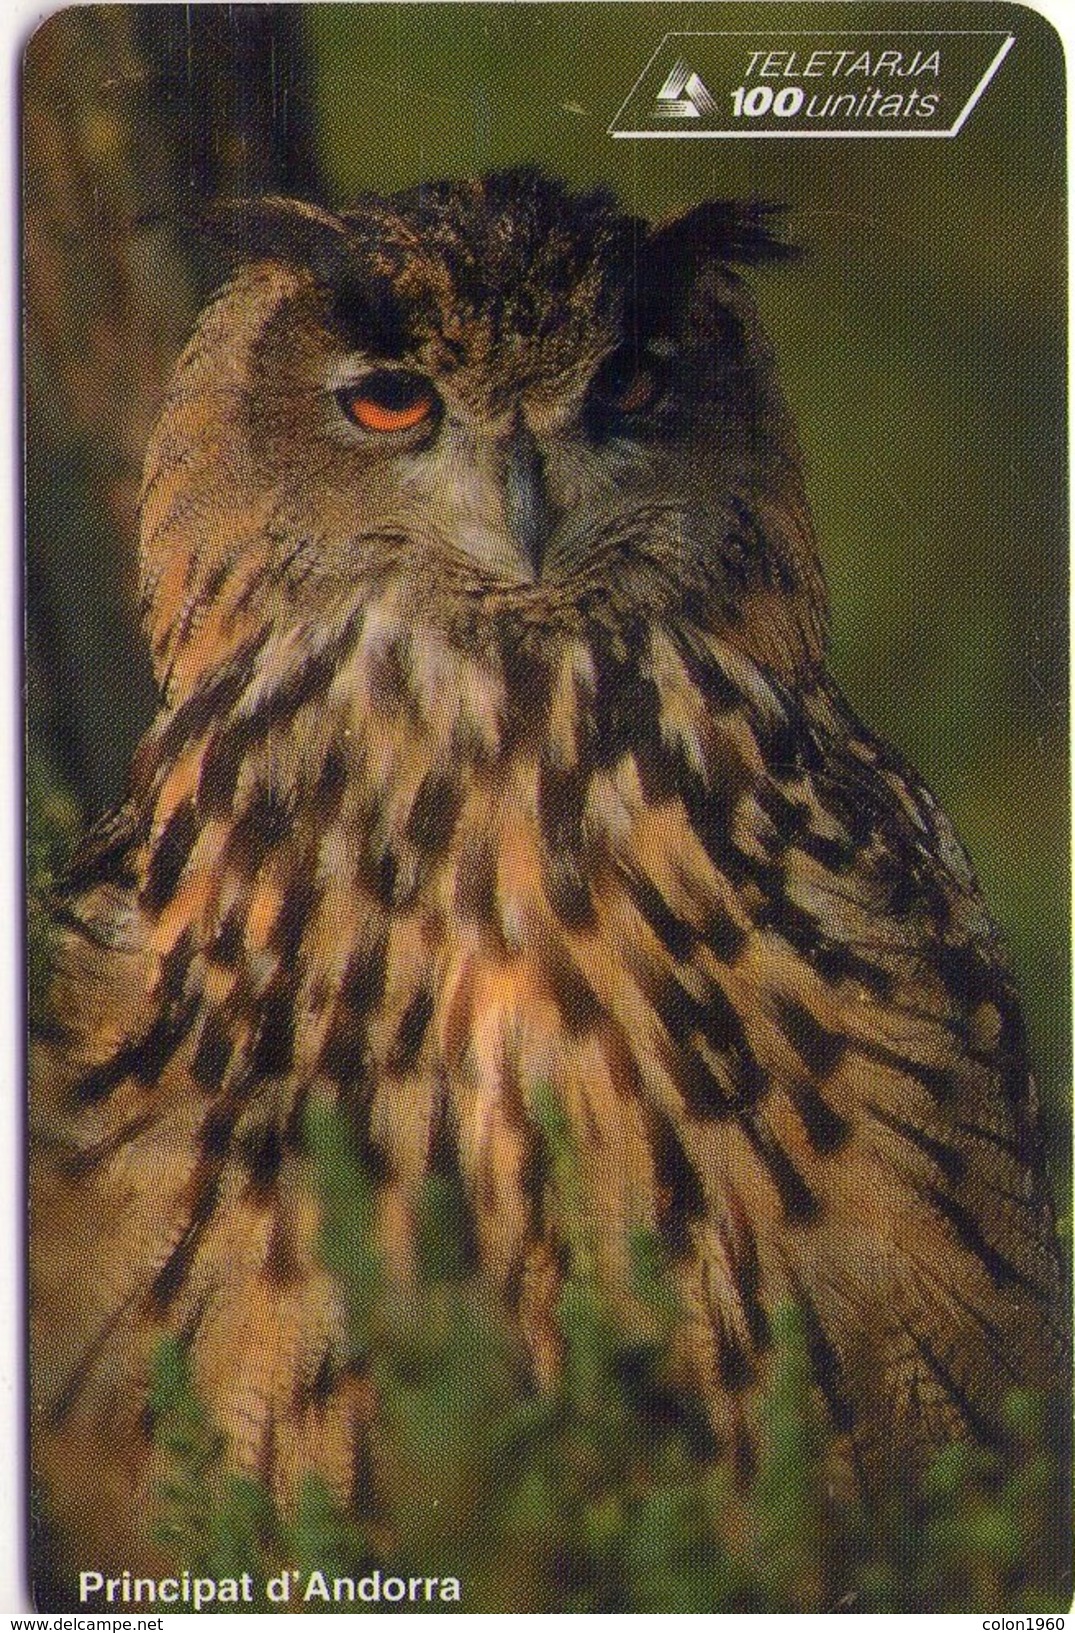 ANDORRA. FAUNA. BUHO - Eagle Owl. 1997-11. 20000 Ex. AD-STA-0082. (075) - Búhos, Lechuza